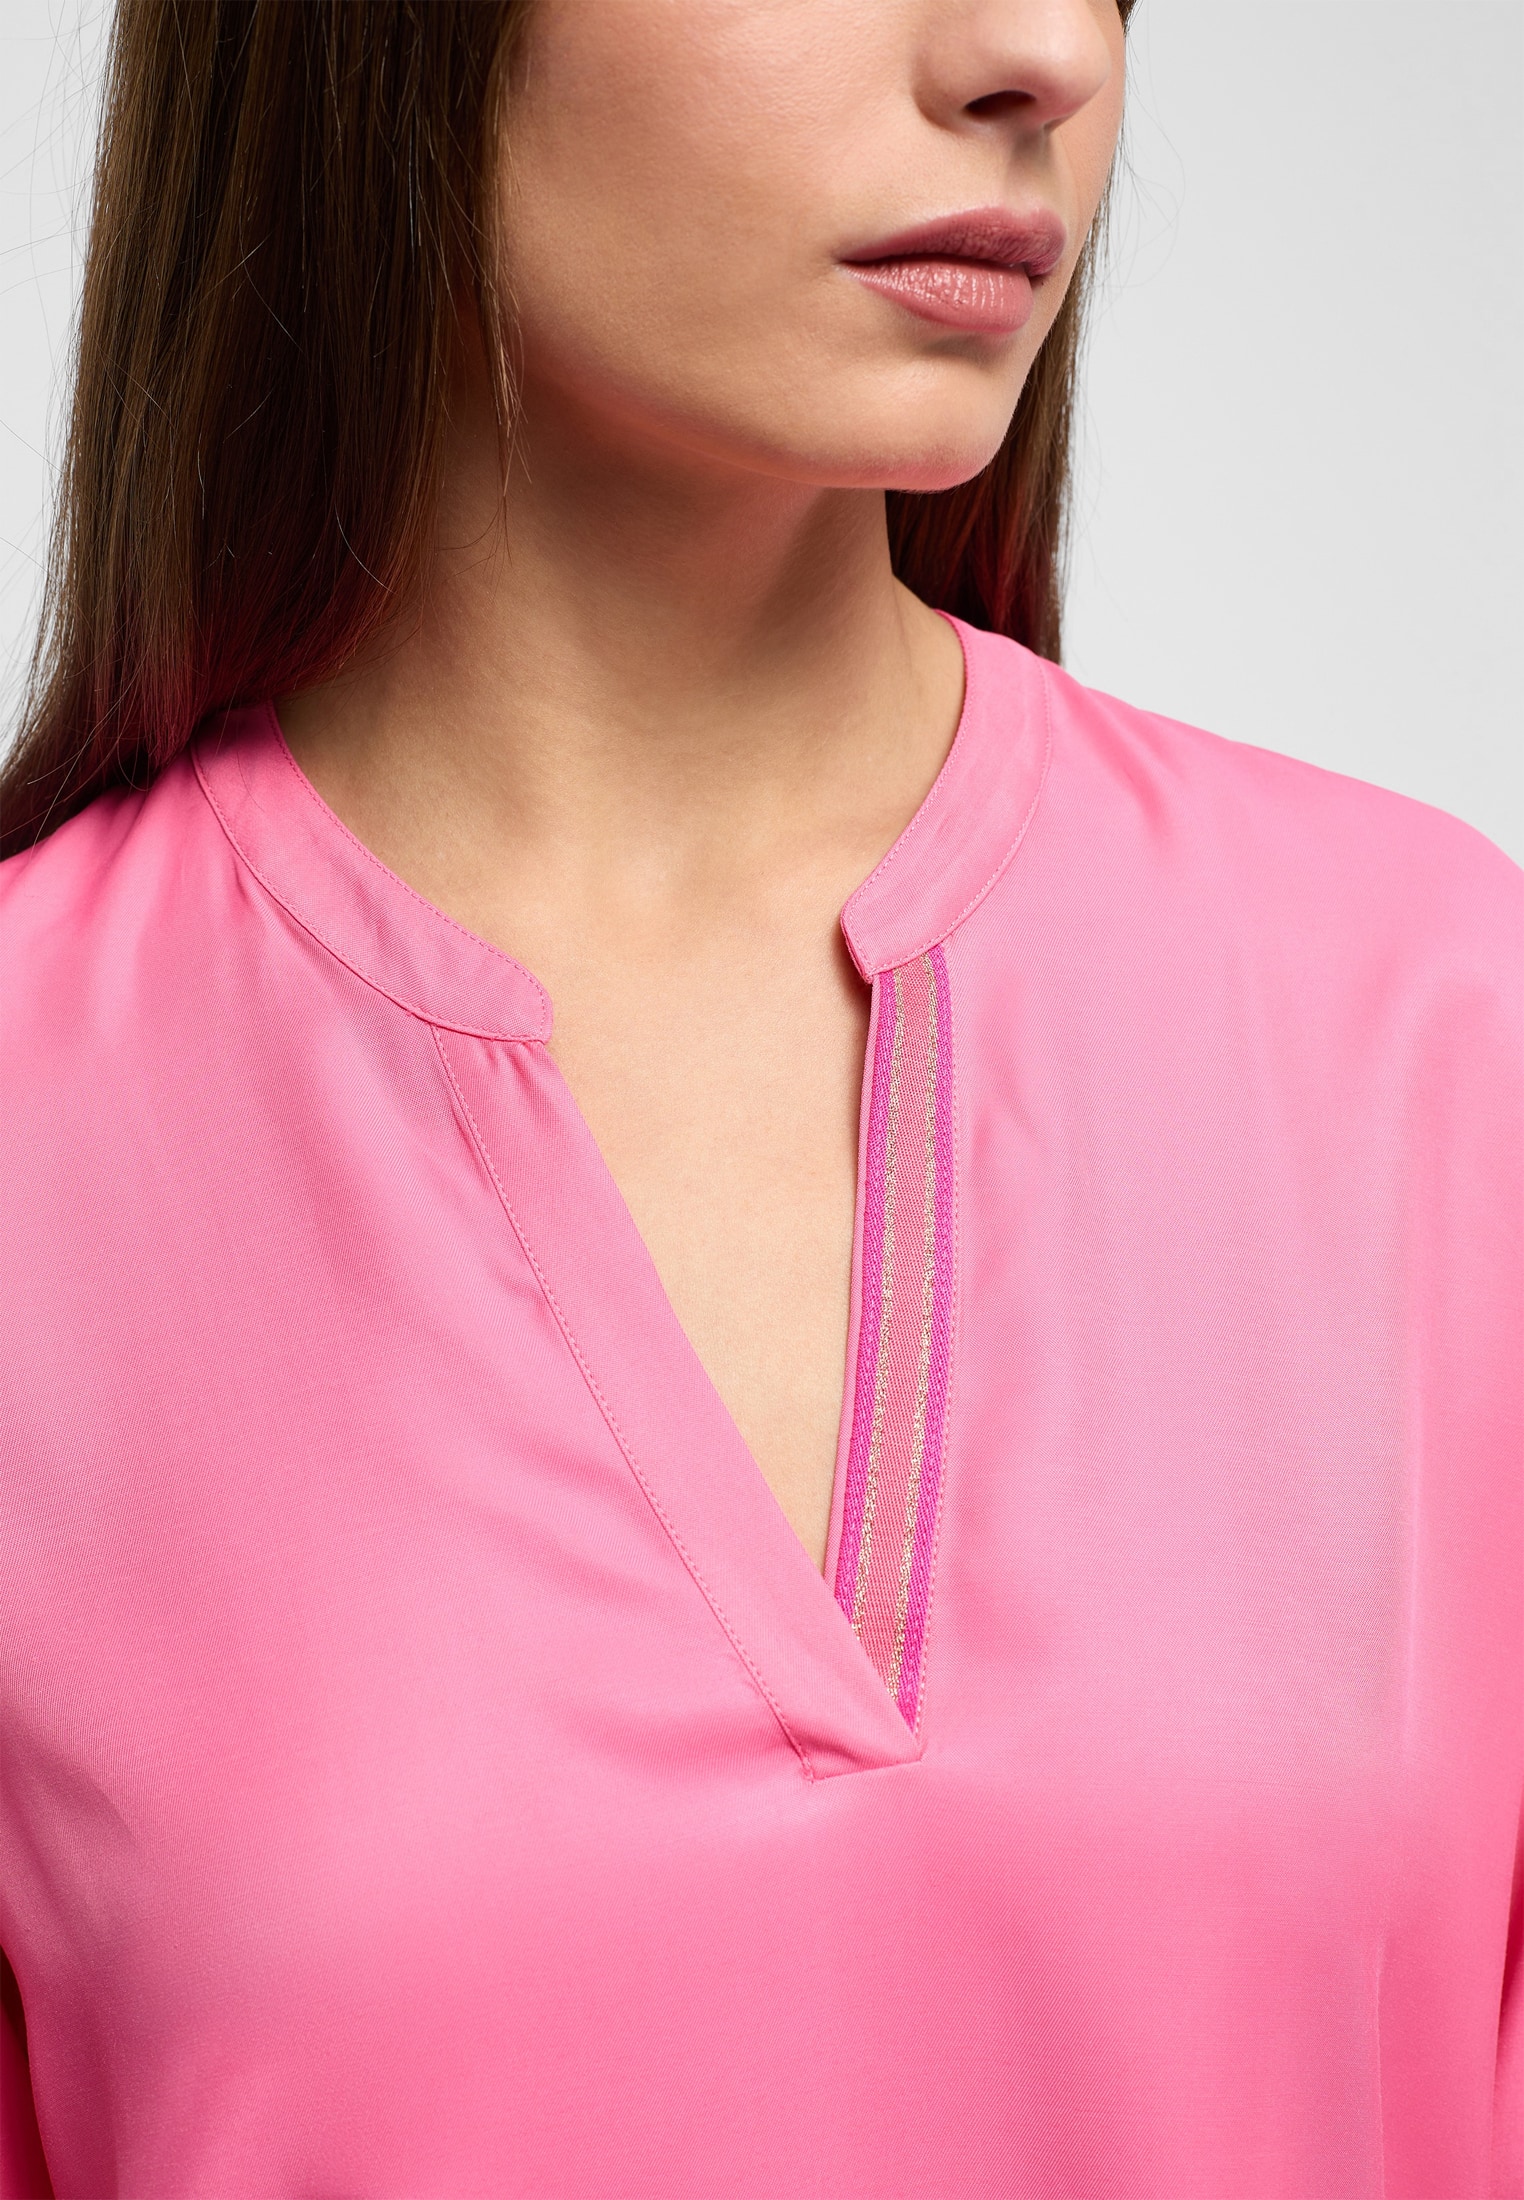 unifarben 2BL04272-15-21-42-1/1 Viscose Bluse | 42 in pink | | Langarm | Shirt pink